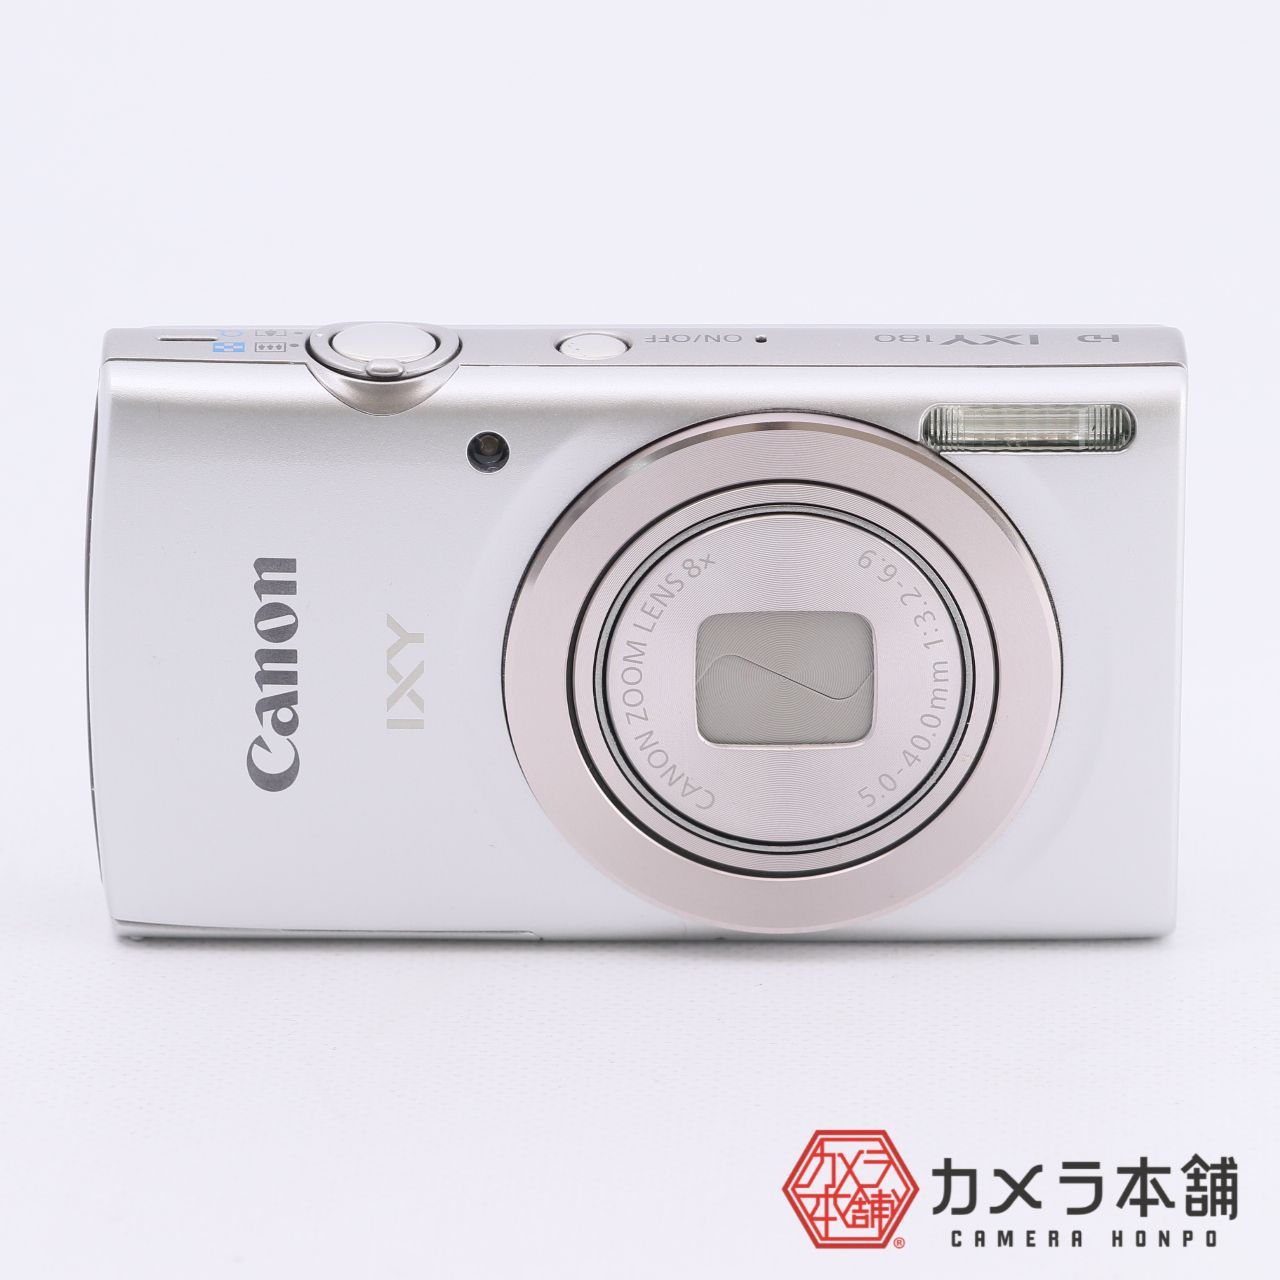 Canon IXY 180 SL 2000万画素 8倍ズーム-